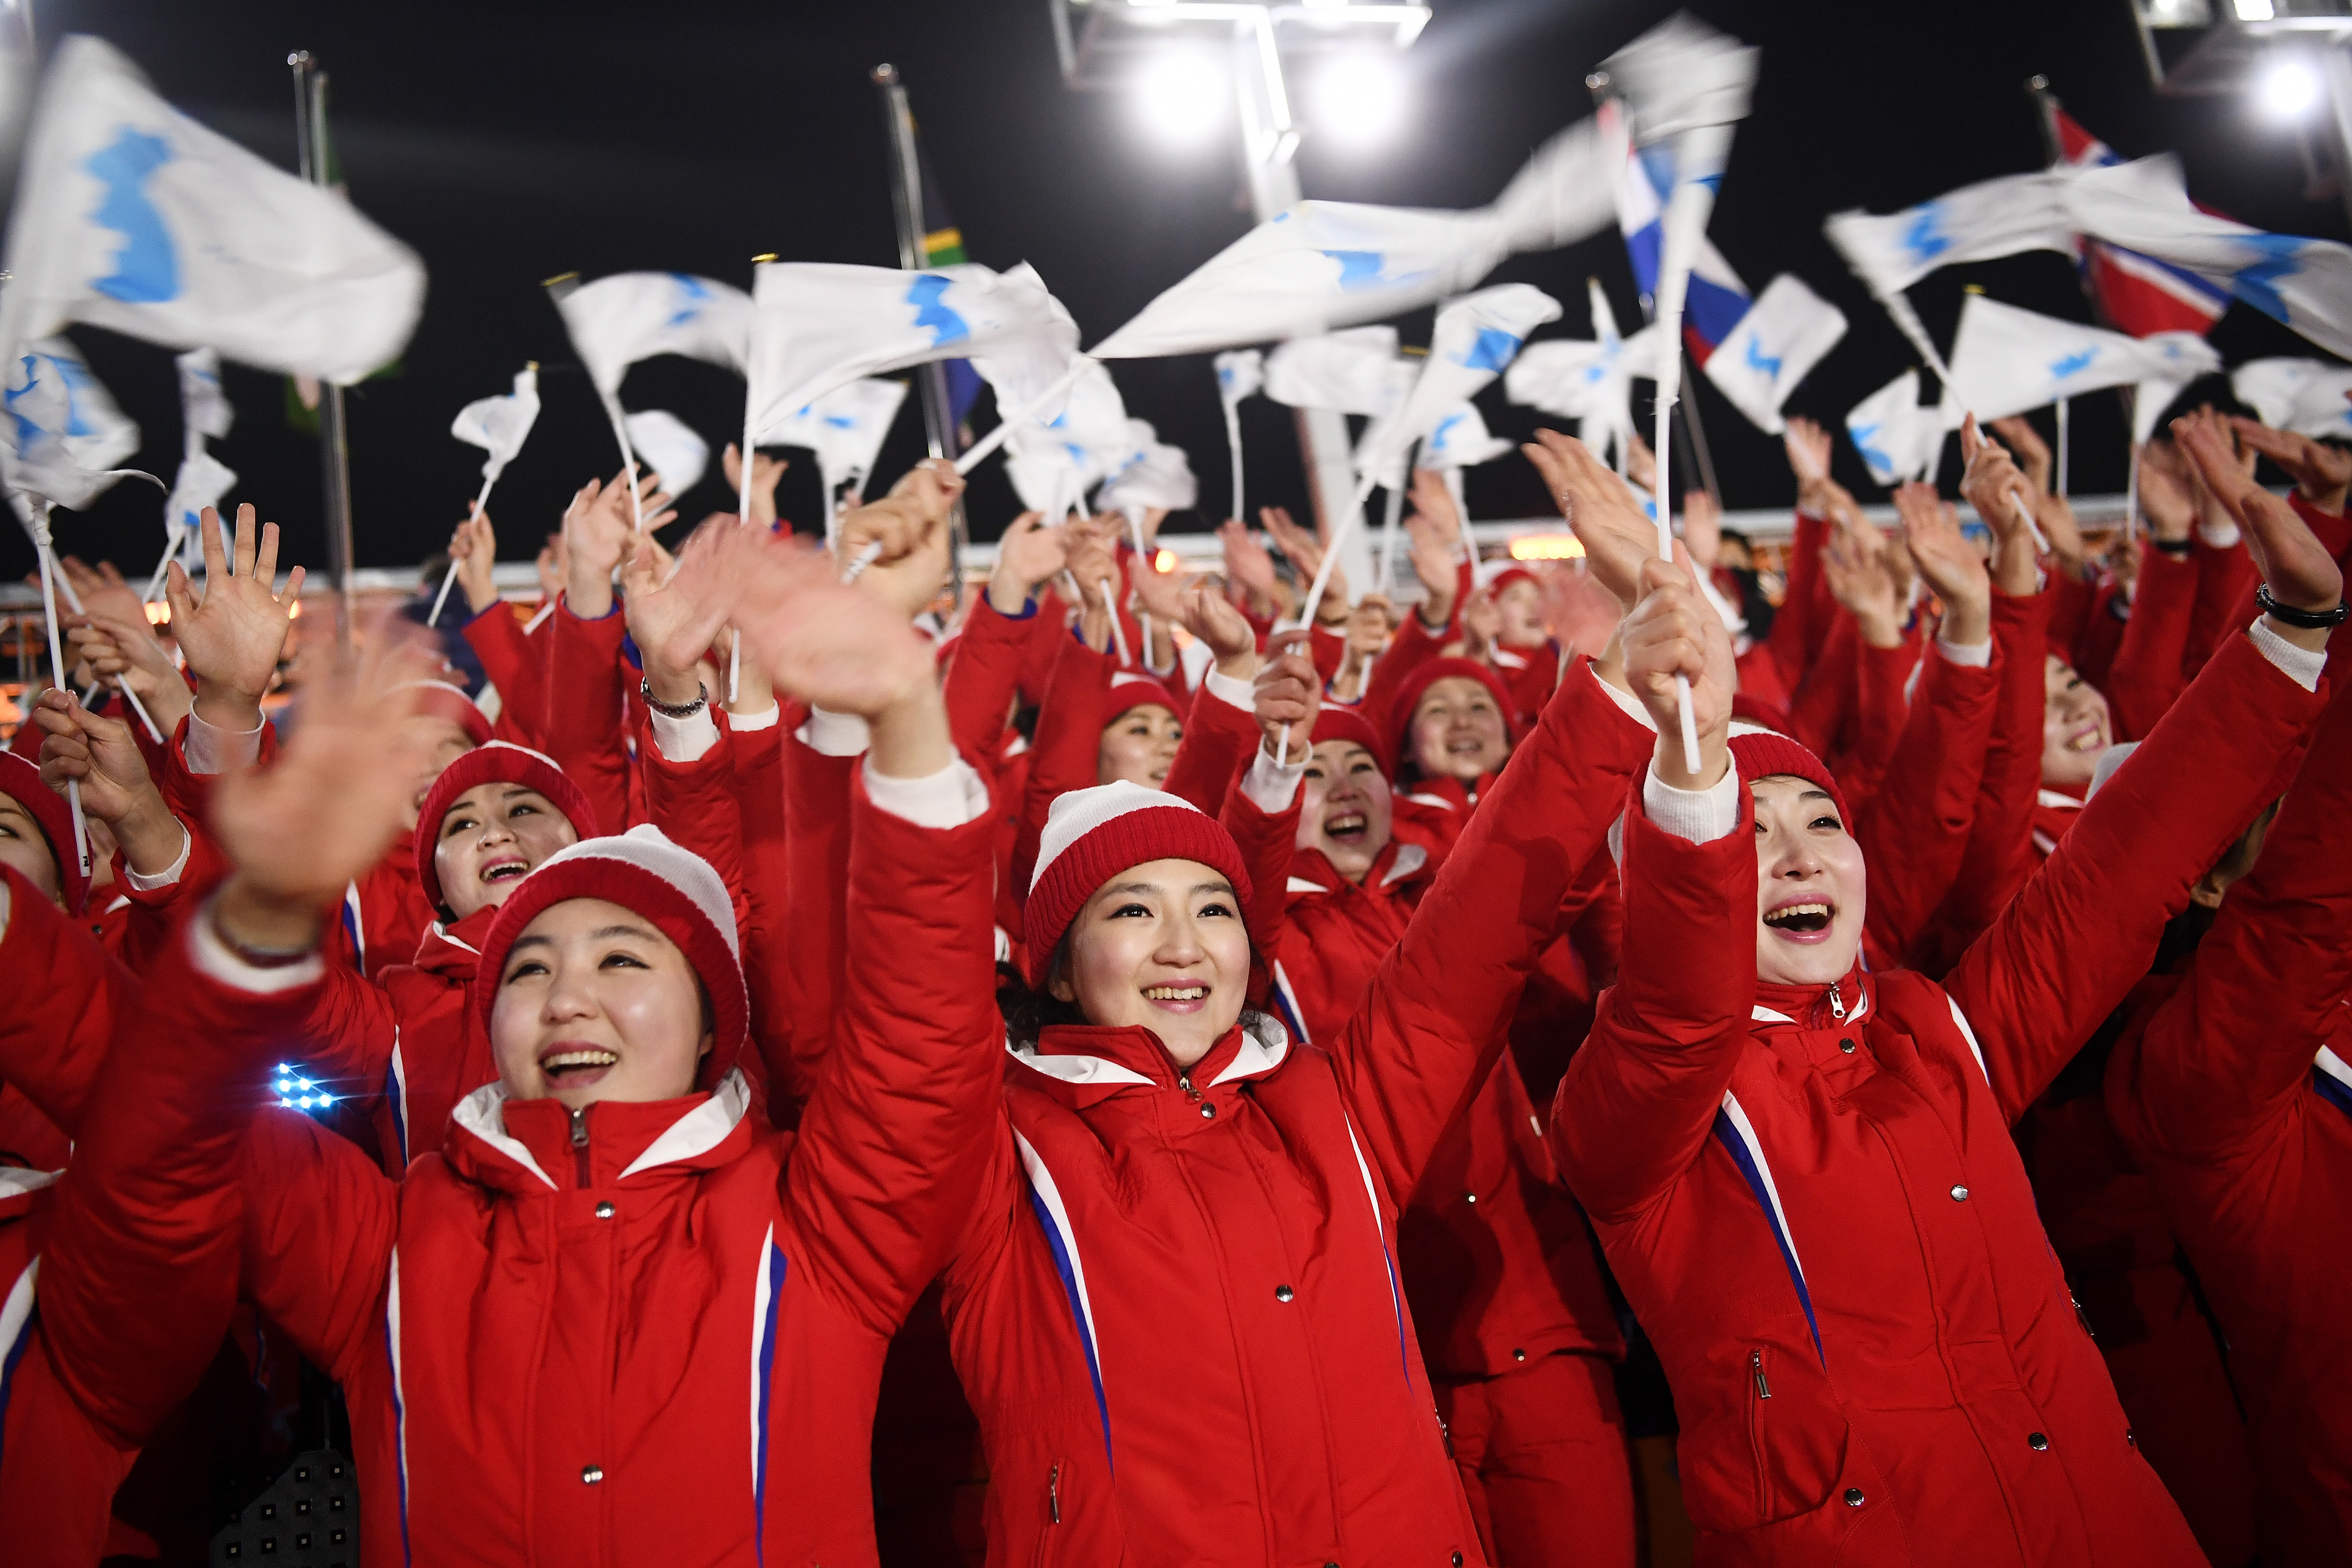 PYEONGCHANG-GUN, CORÉE DU SUD - 09 FÉVRIER : Les spectateurs apprécient l'atmosphère avant la cérémonie d'ouverture des Jeux olympiques d'hiver de PyeongChang 2018 au stade olympique de PyeongChang le 9 février 2018 à Pyeongchang-gun, Corée du Sud. (Photo by Pool - Frank Fife/Bongarts/Getty Images)